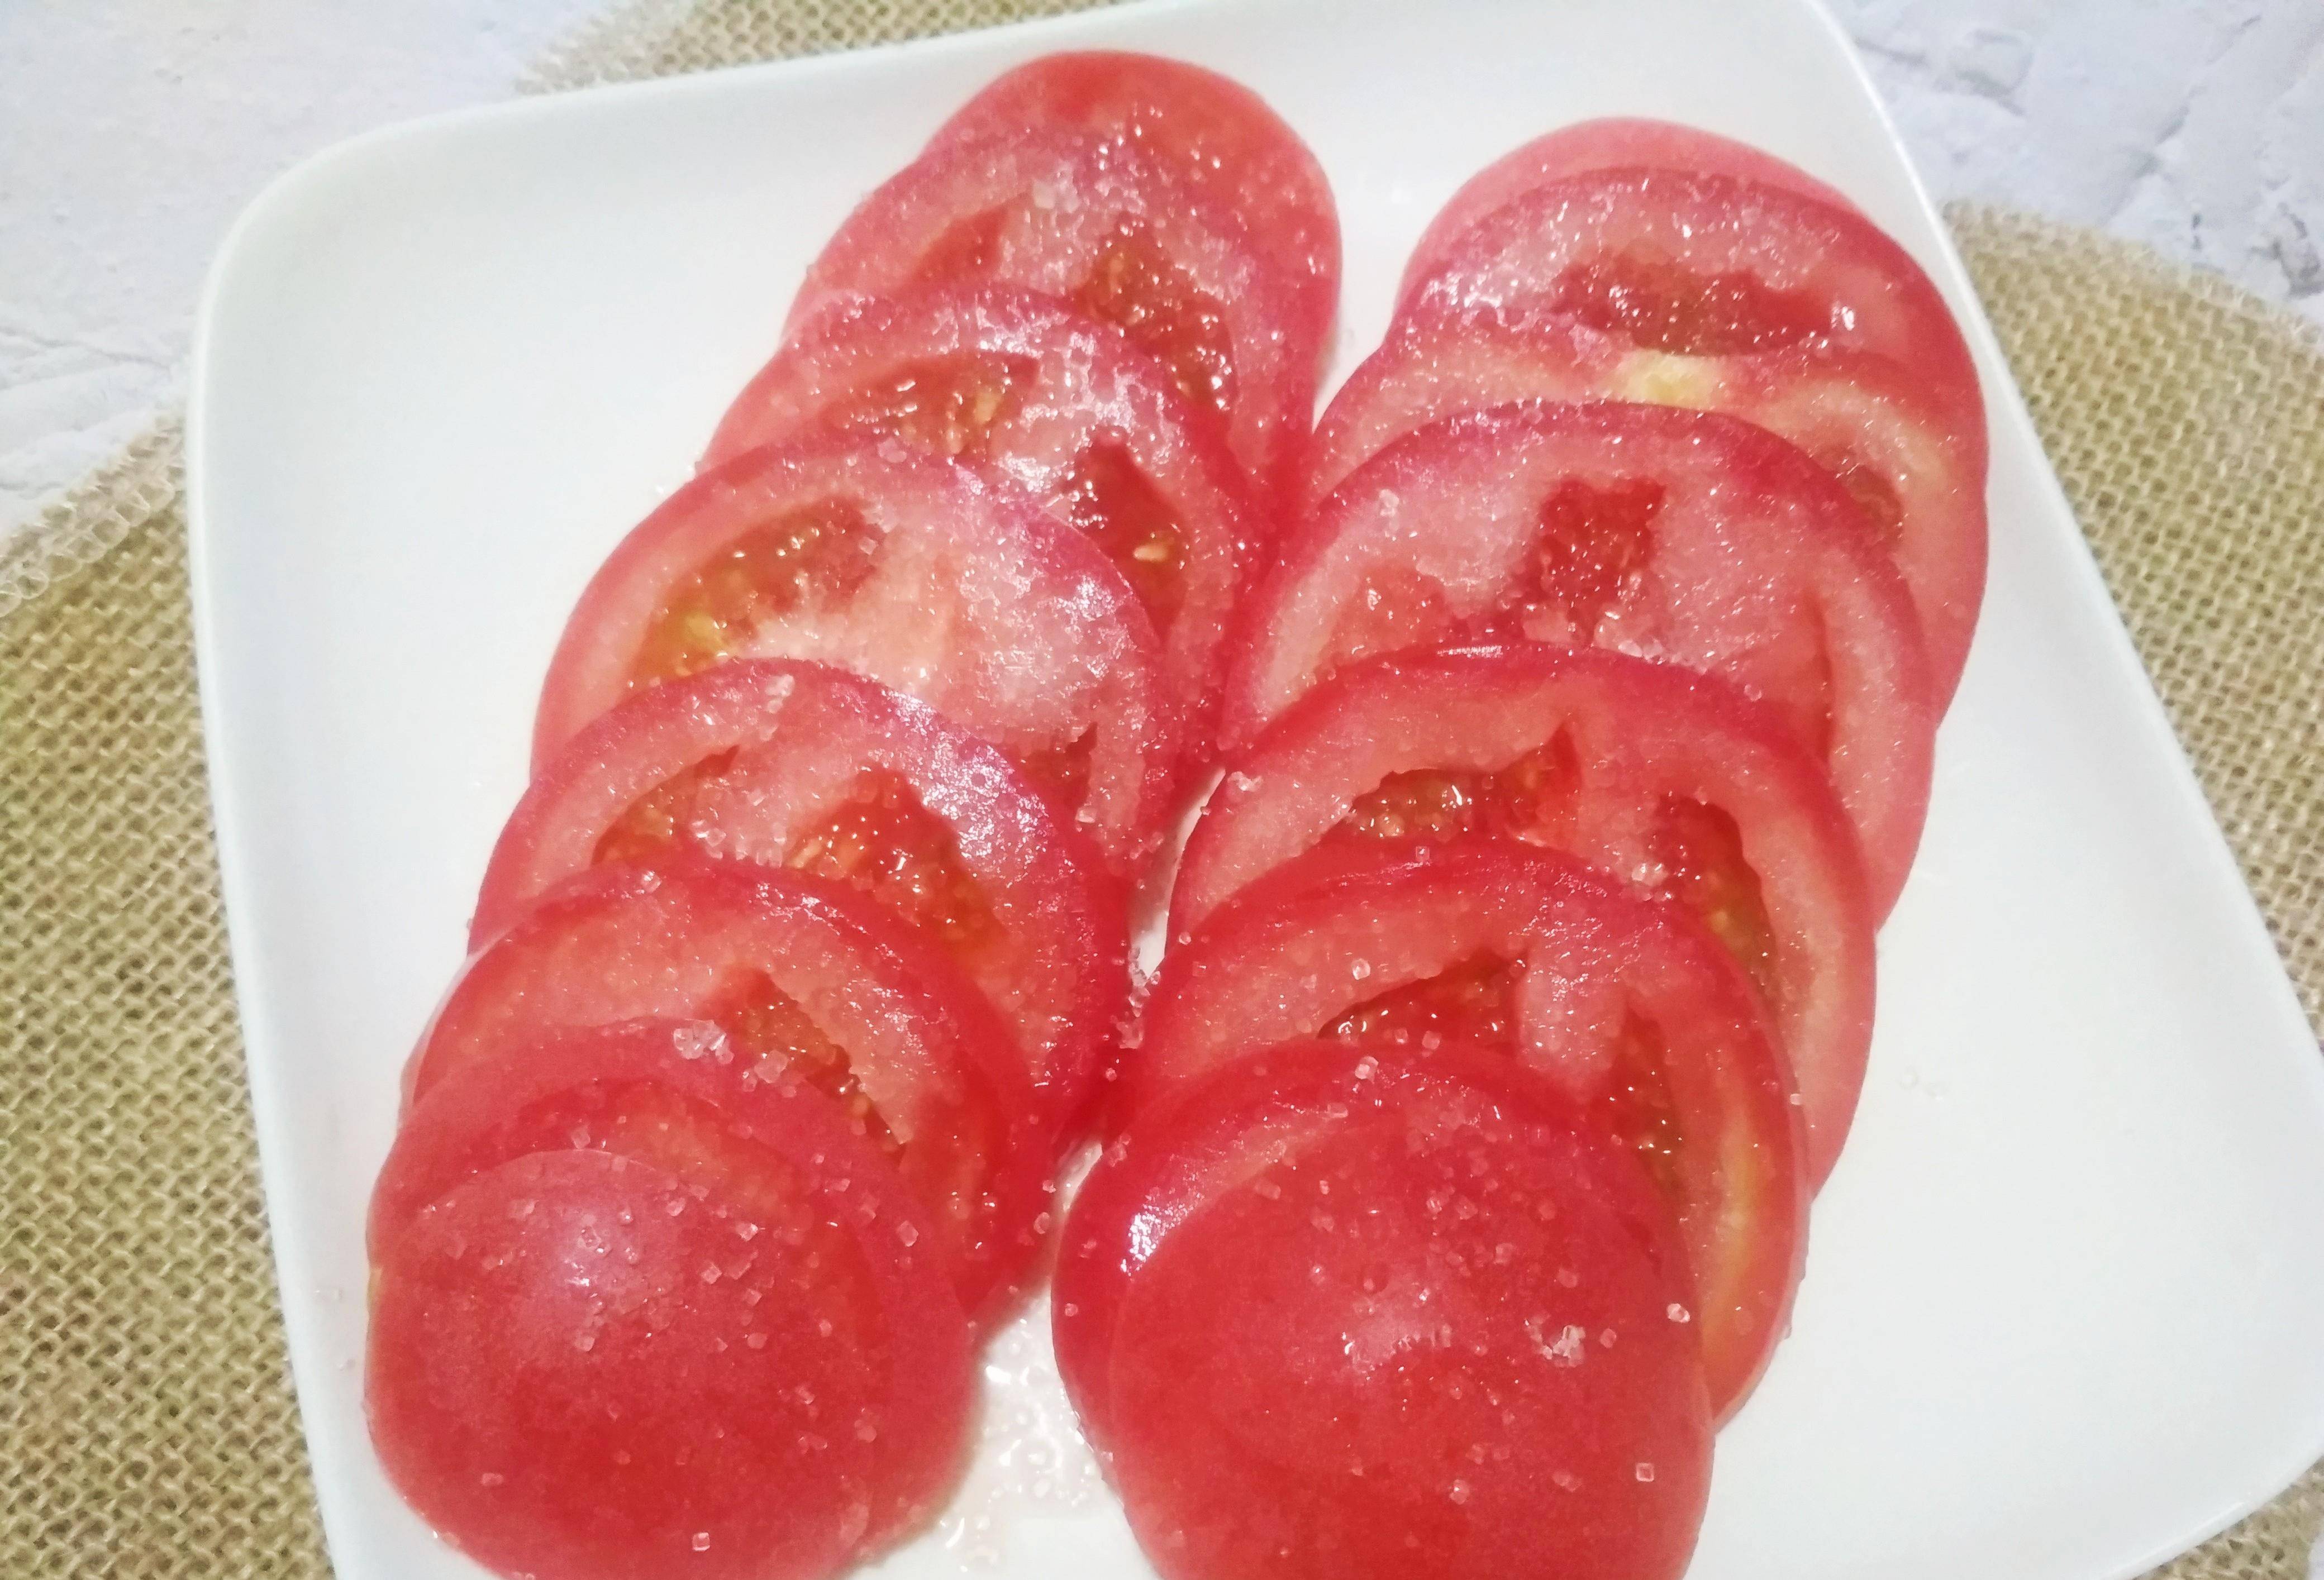 即解暑又解渴,又能当菜,只需把西红柿清洗干净,切成大小均匀的片,摆入